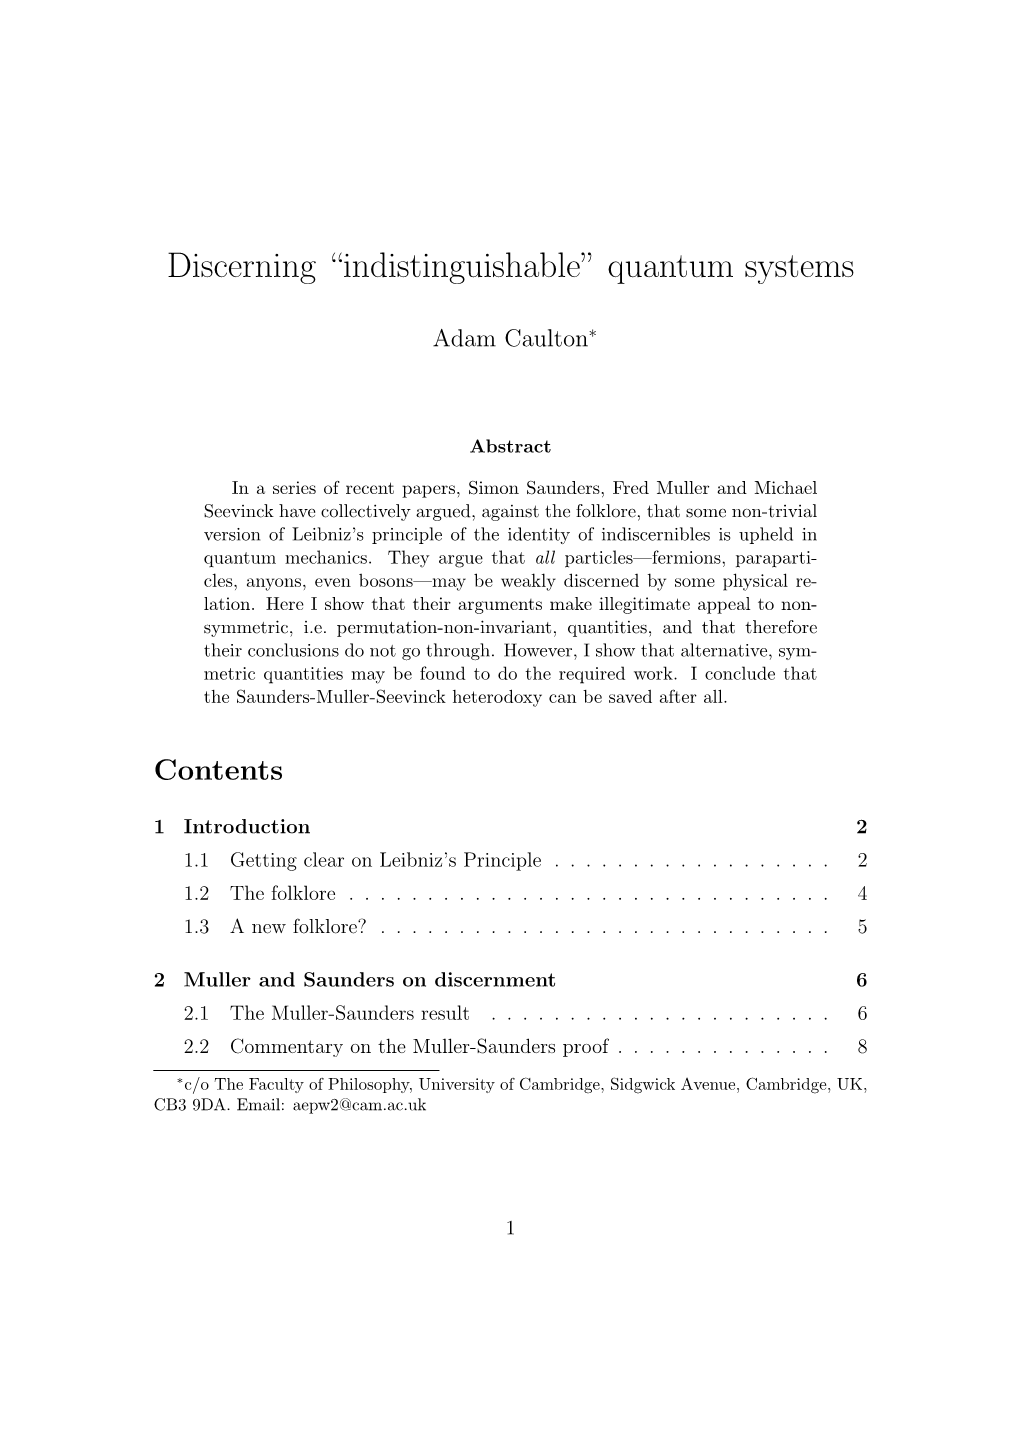 Discerning “Indistinguishable” Quantum Systems